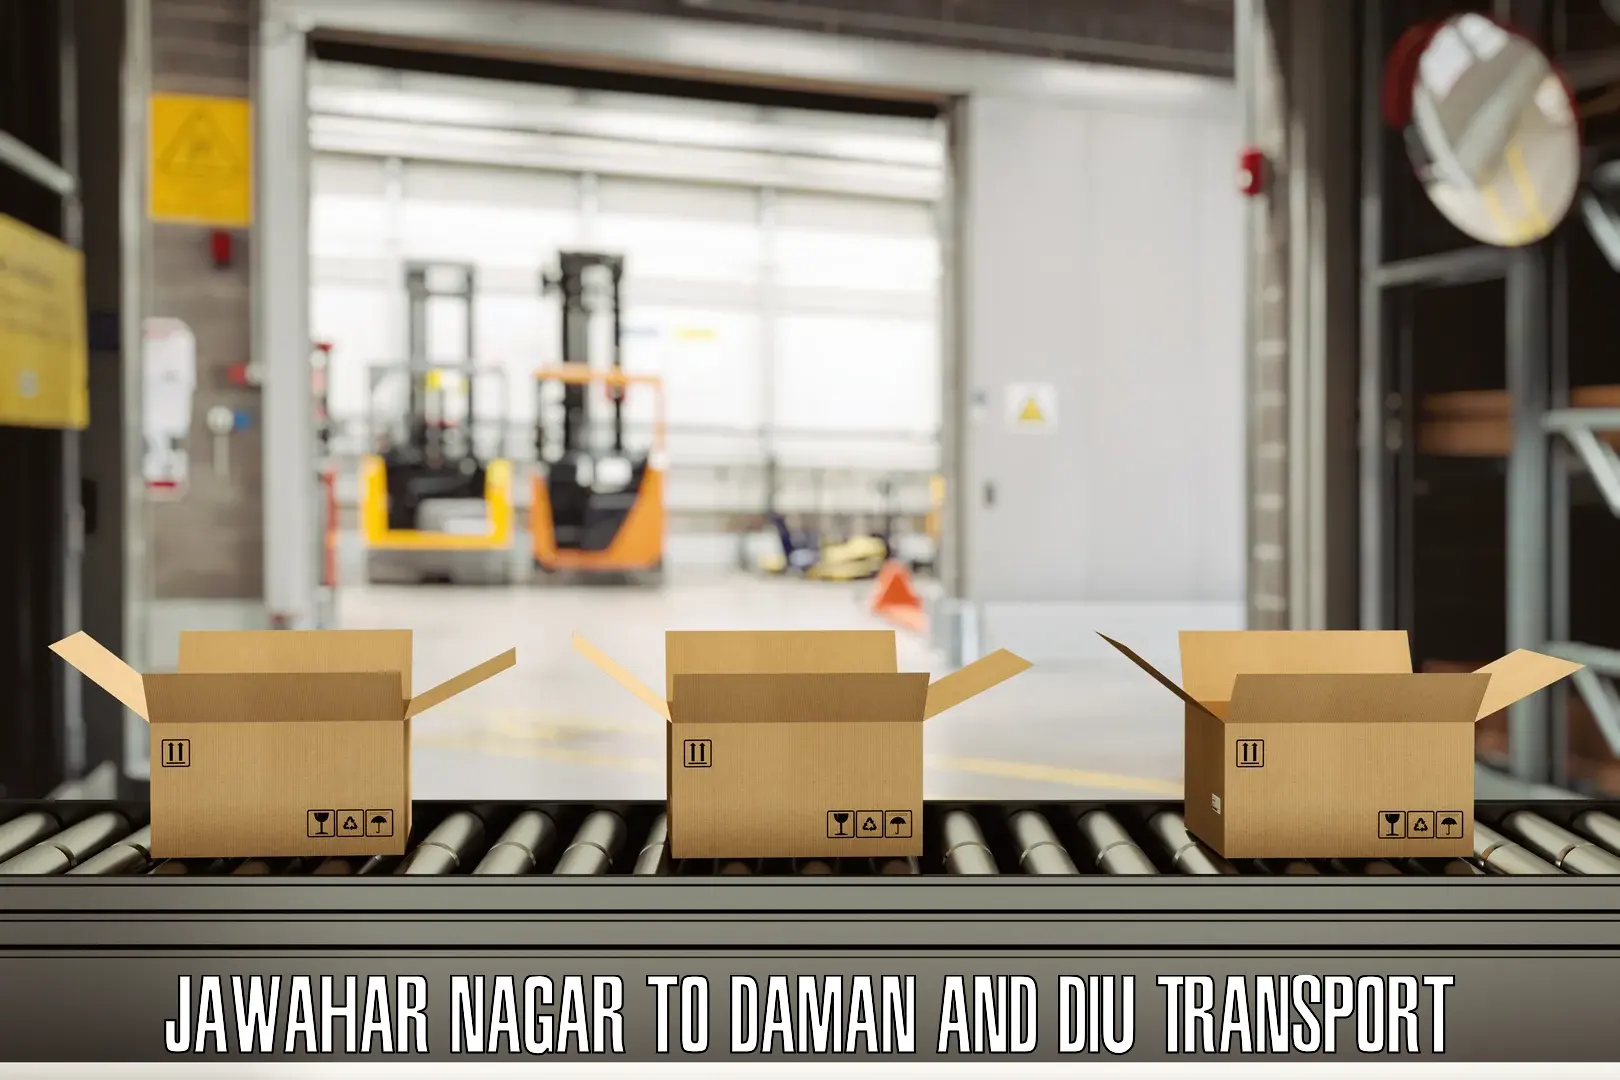 Commercial transport service Jawahar Nagar to Daman and Diu